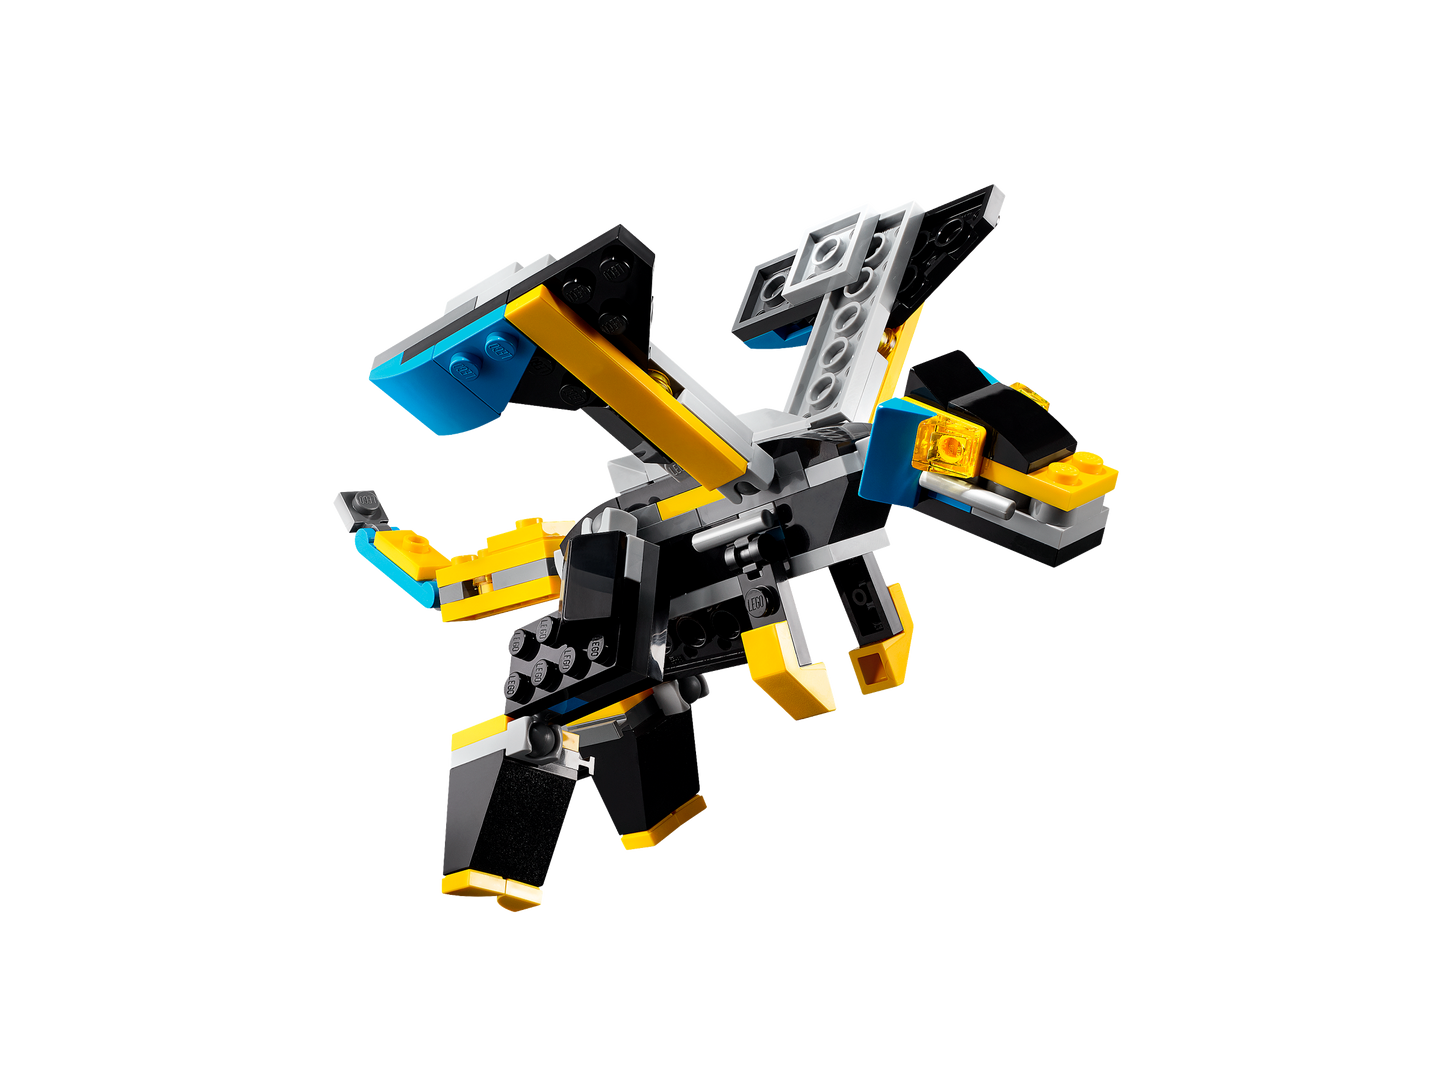 LEGO® set 31124